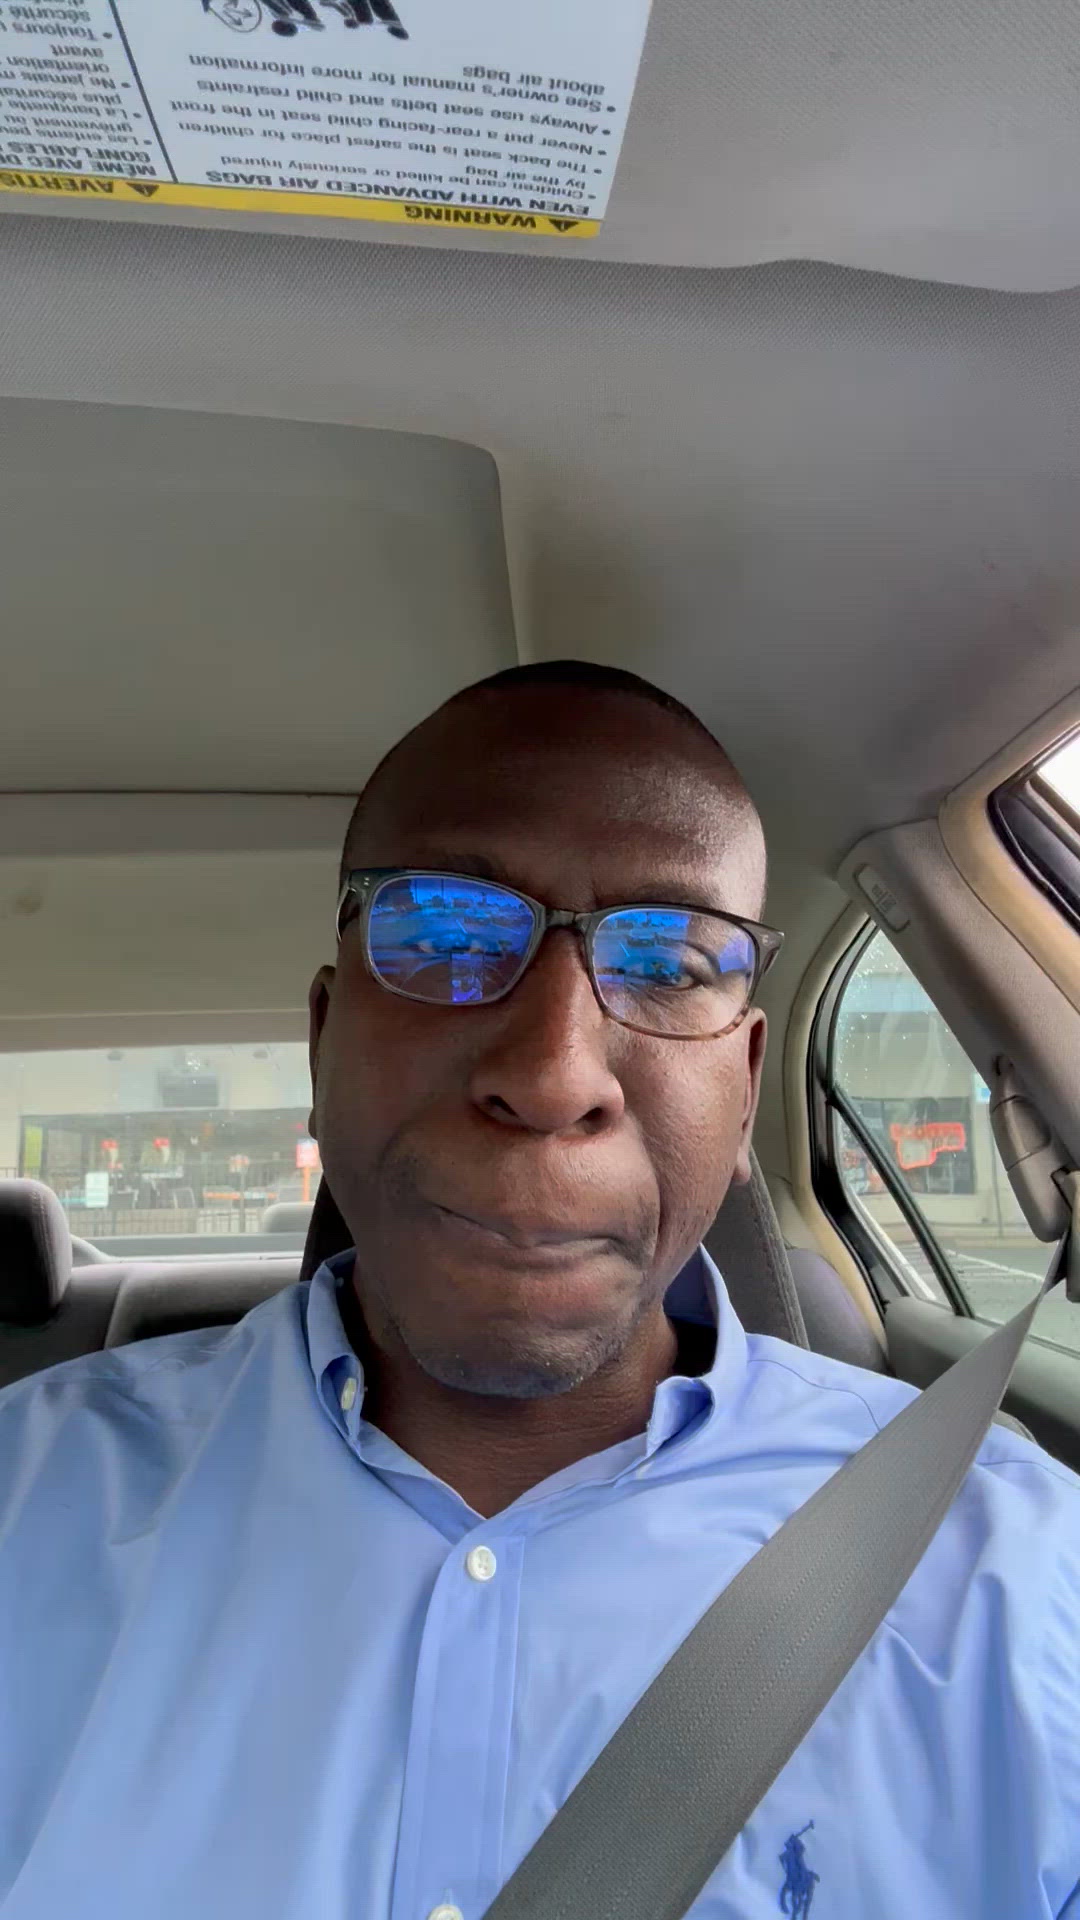 annaliese charise villafuerte recommends sunglasses selfie in a car meme pic